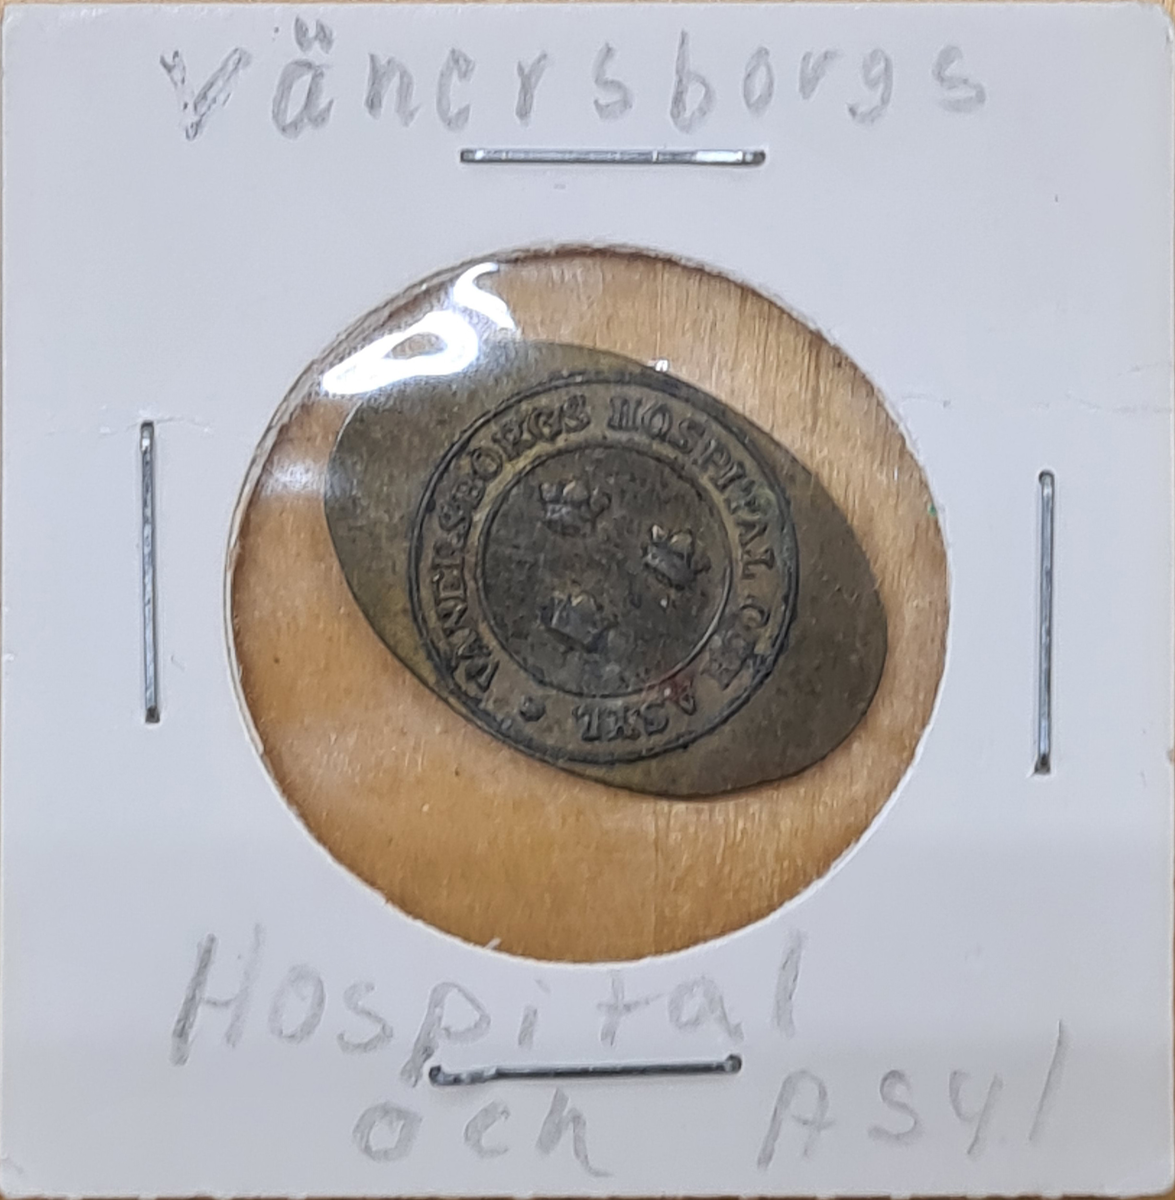 Polett i koppar. Poletten är oval med en stansad ring med tre kronor sär det står: Vänersborgs Hospital och Asyl.